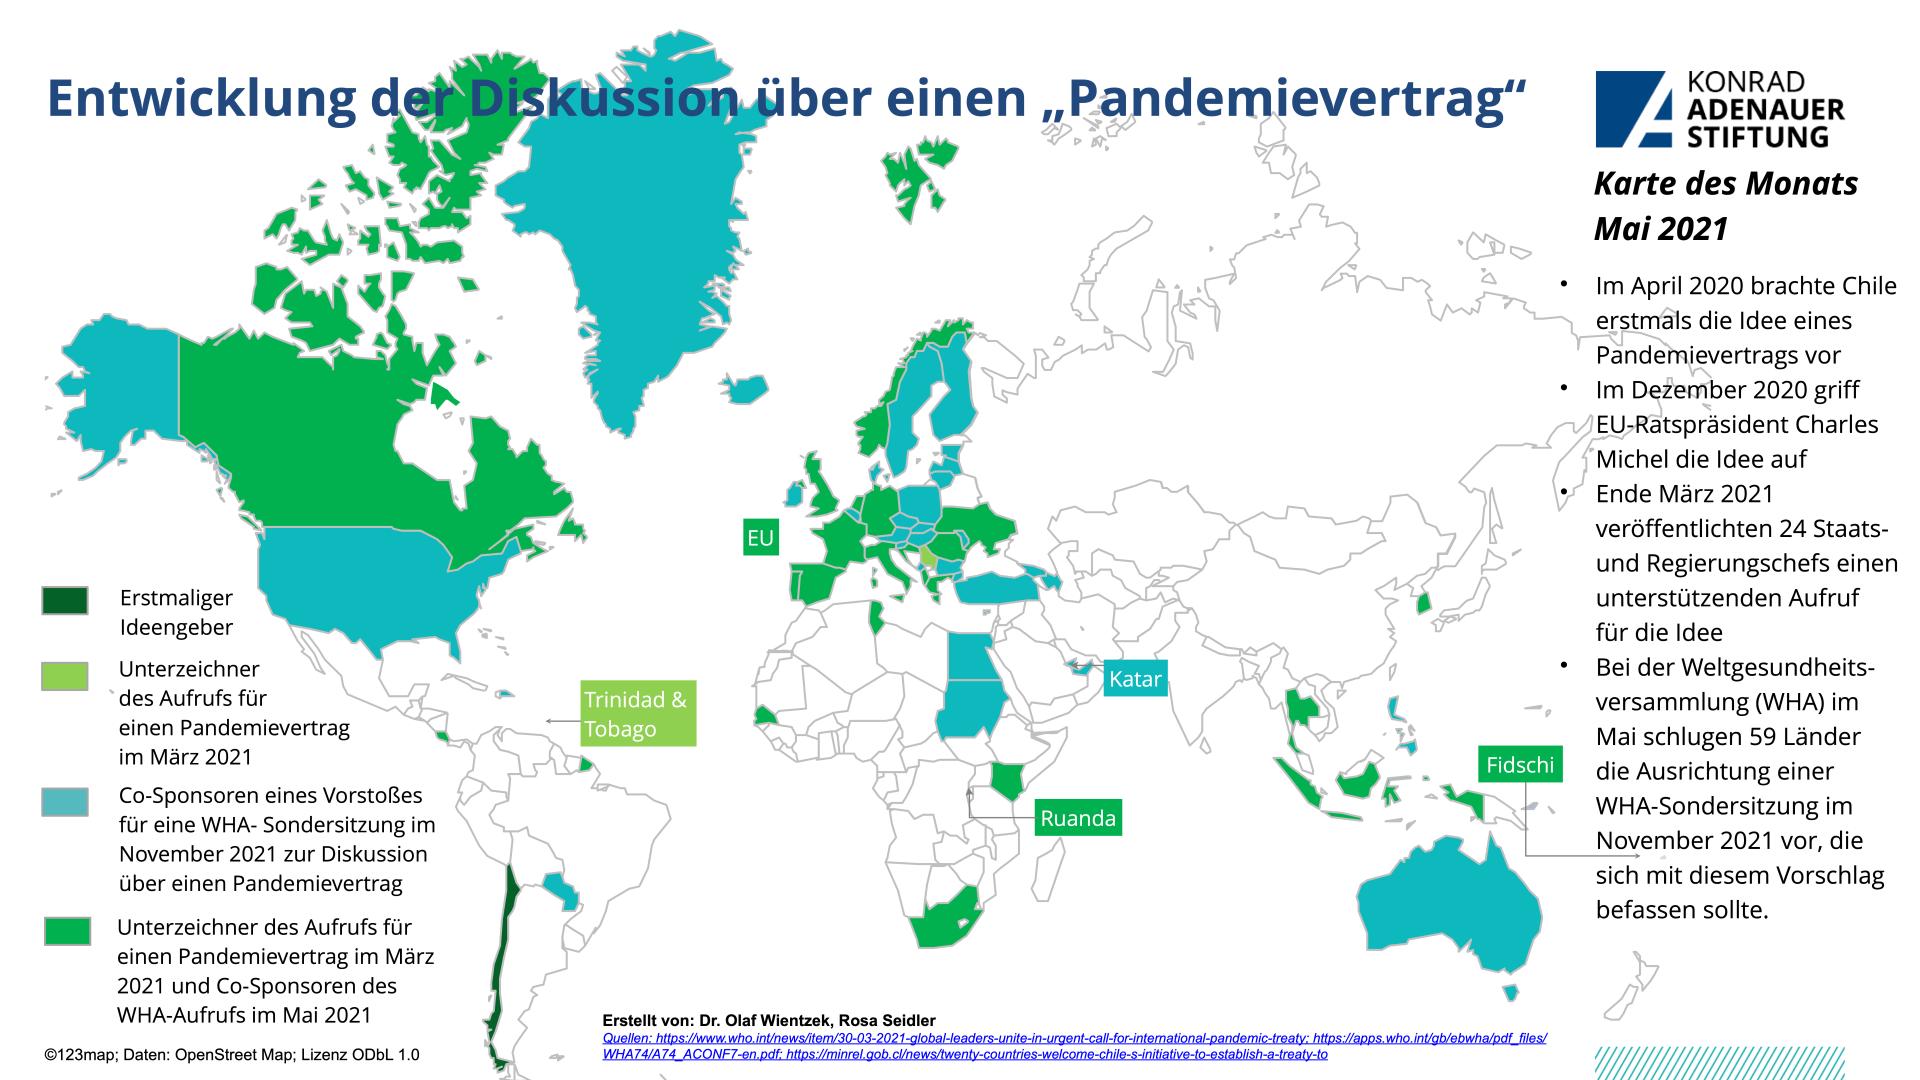 Nationen, die den Pandemievertrag unterstützen